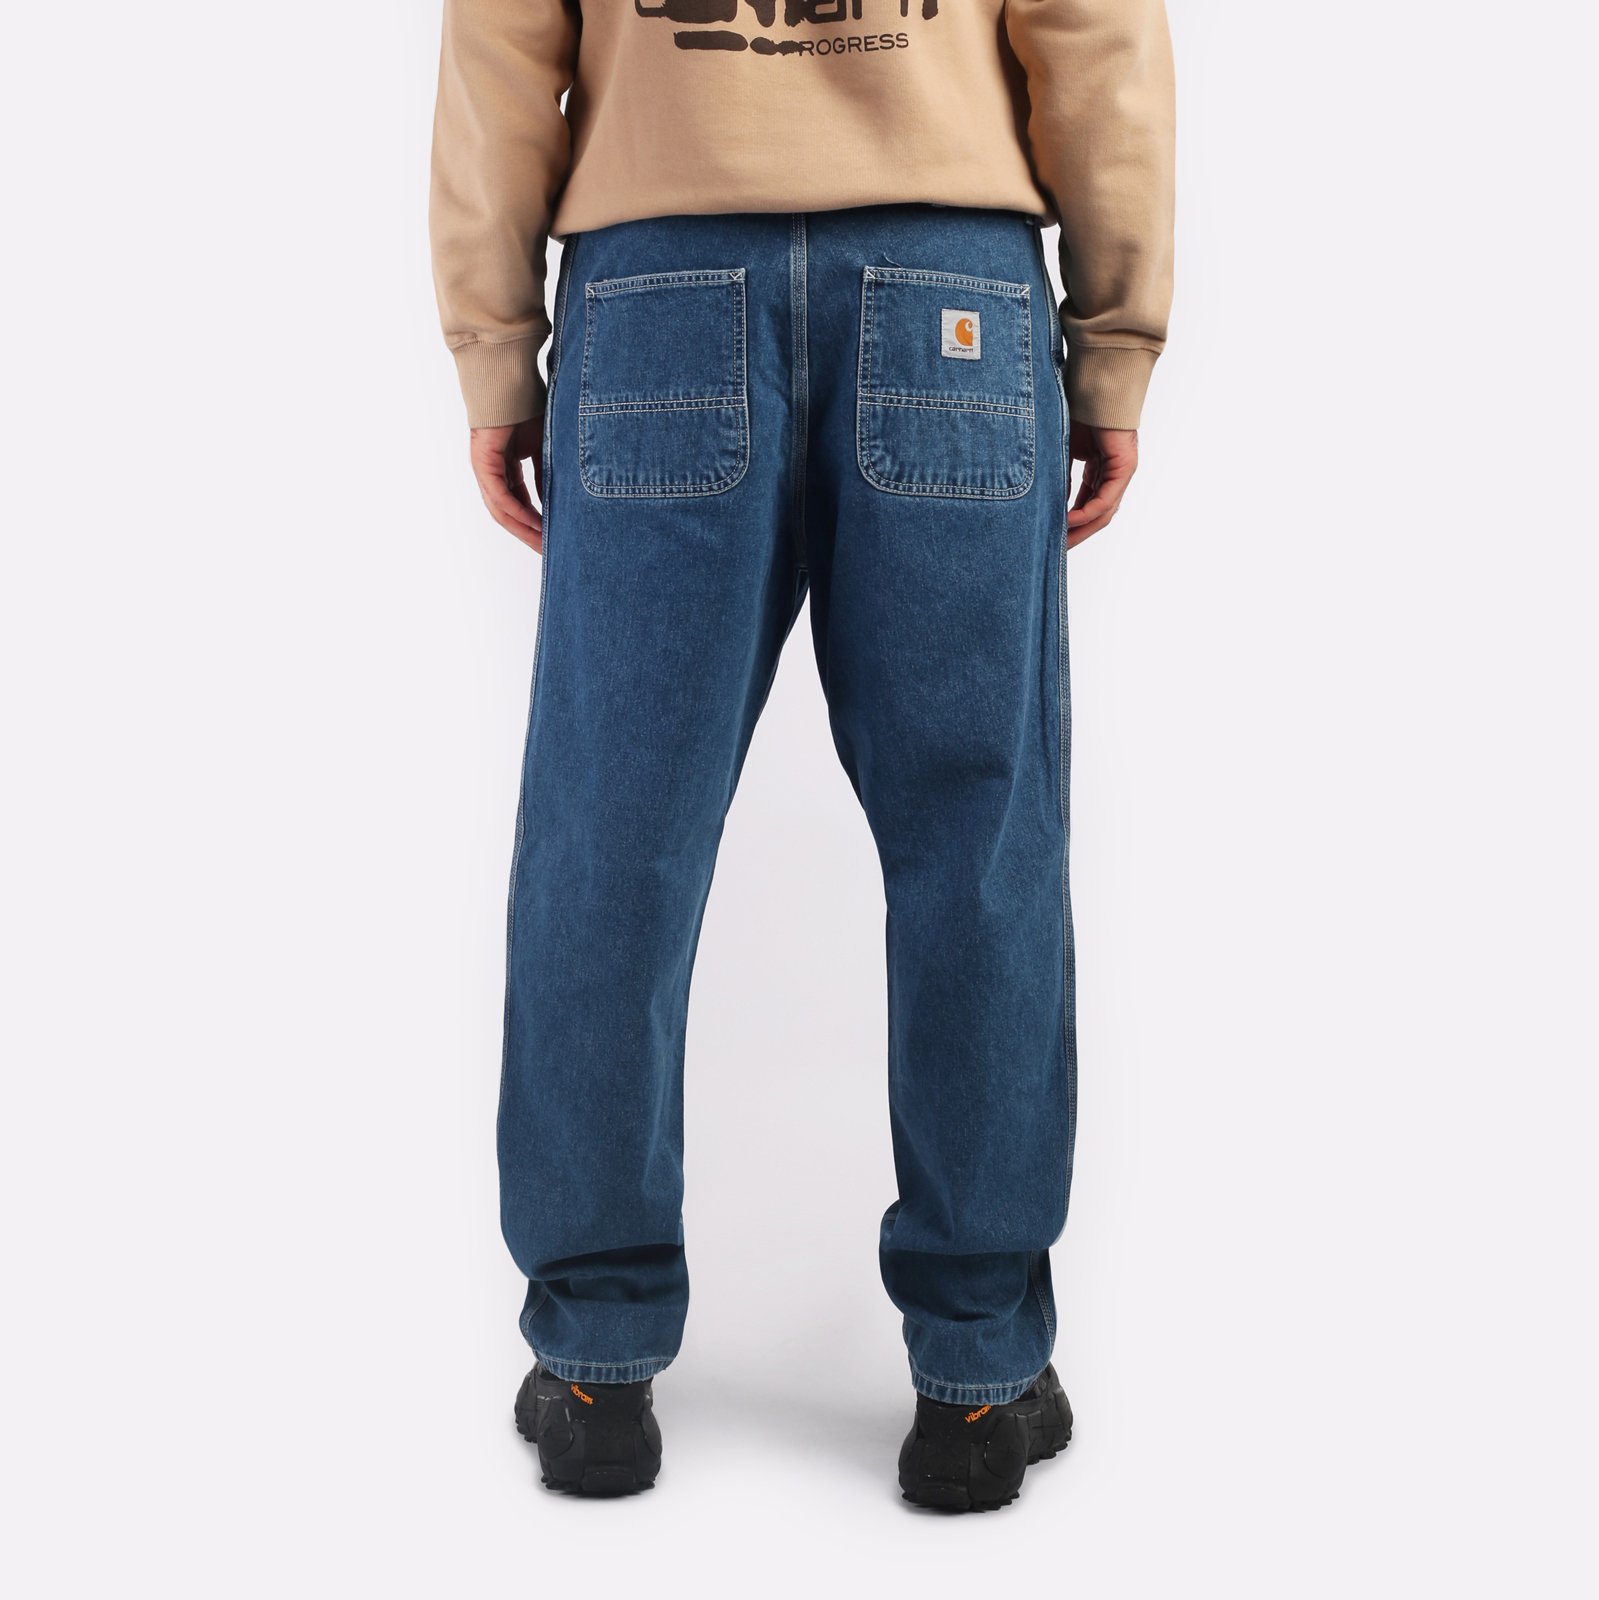 мужские джинсы Carhartt WIP Simple Pant  (I022947-blue)  - цена, описание, фото 2